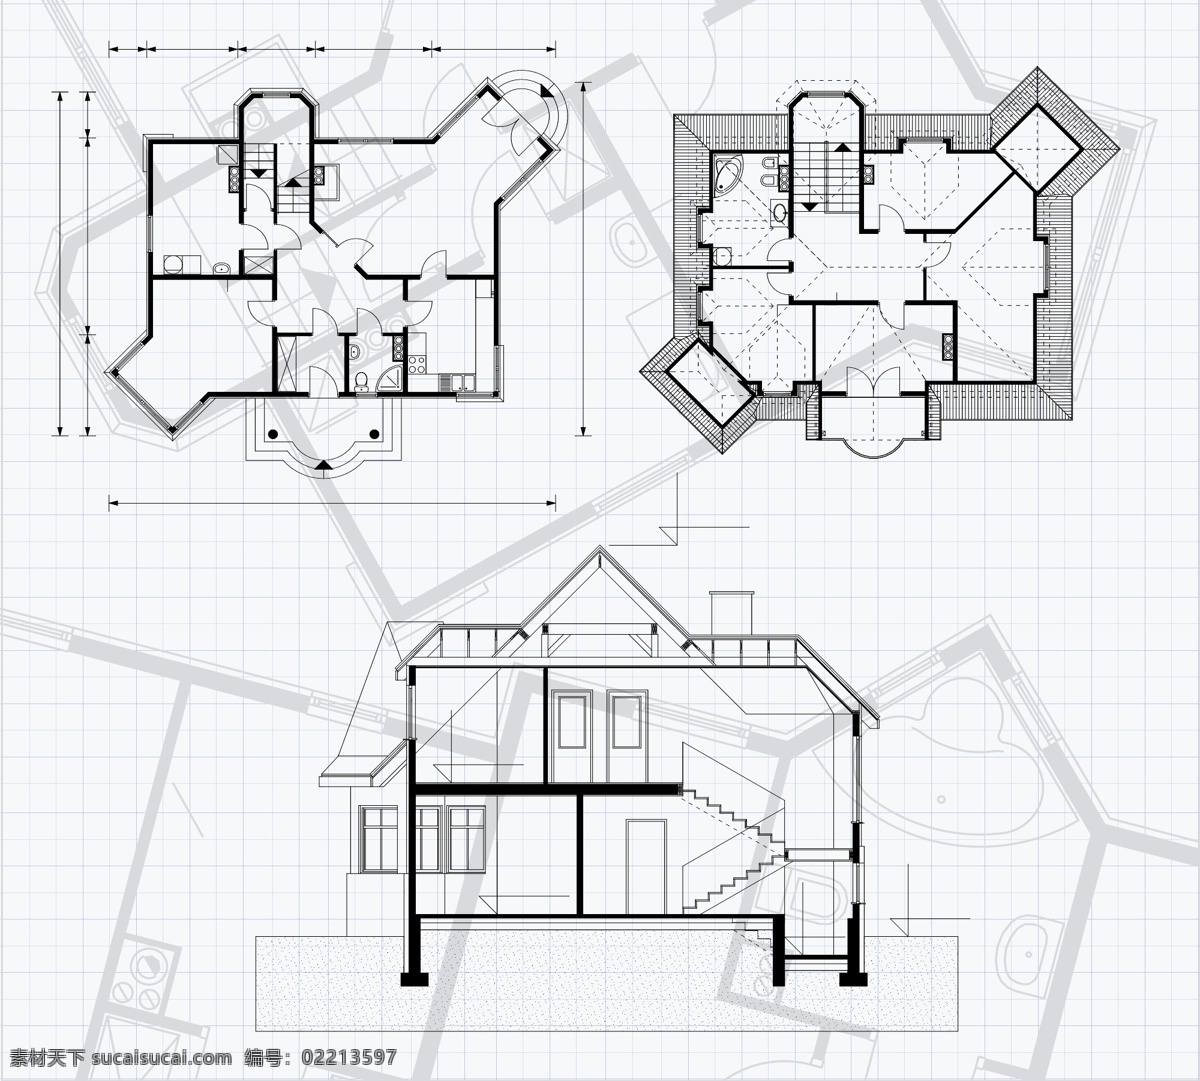 矢量 房屋 平面 规划 图纸 房屋设计 矢量素材 平面图纸 矢量图